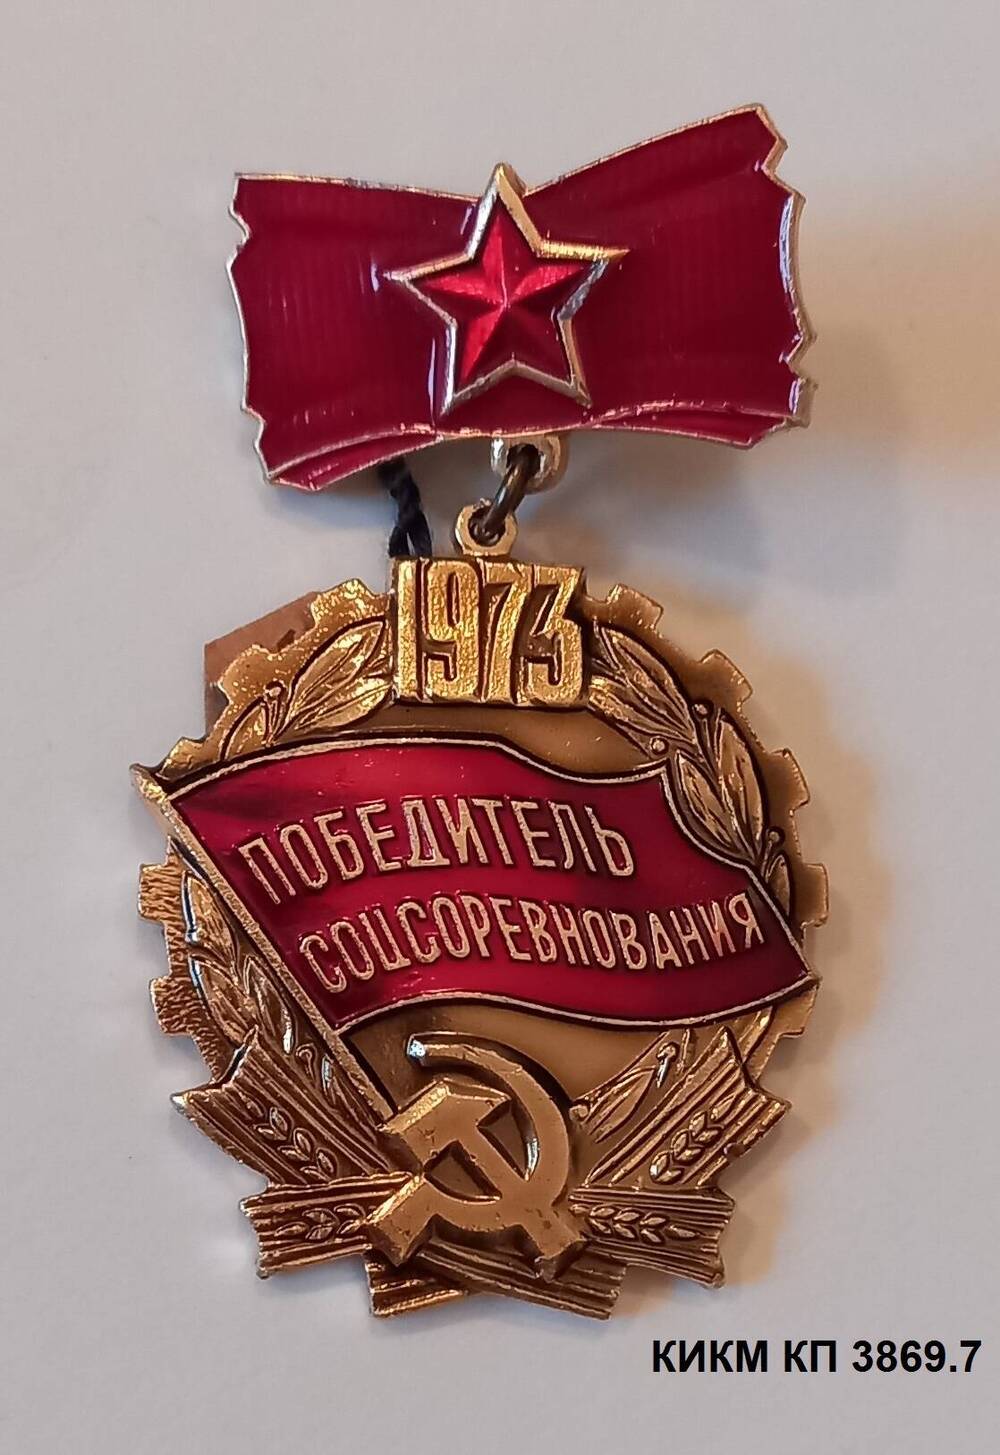 Значок Победитель социалистического соревнования 1973 года Никитина Виктора Андреевича, токаря кранового завода.